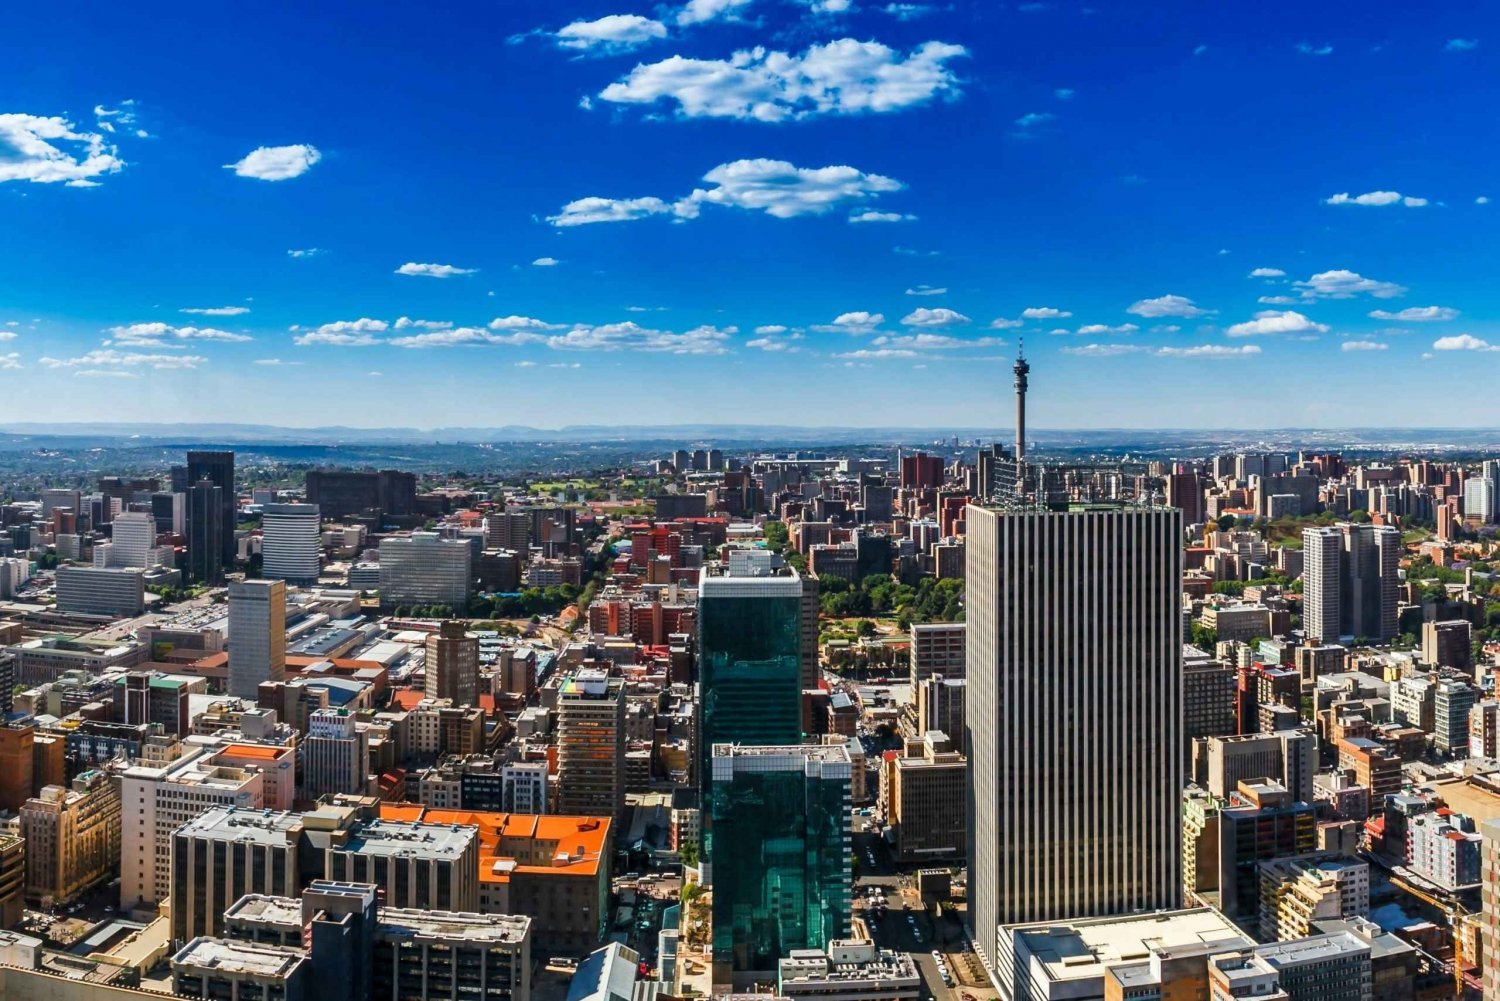 Johannesburg My Jozi by- og tettstedstur med lunsj